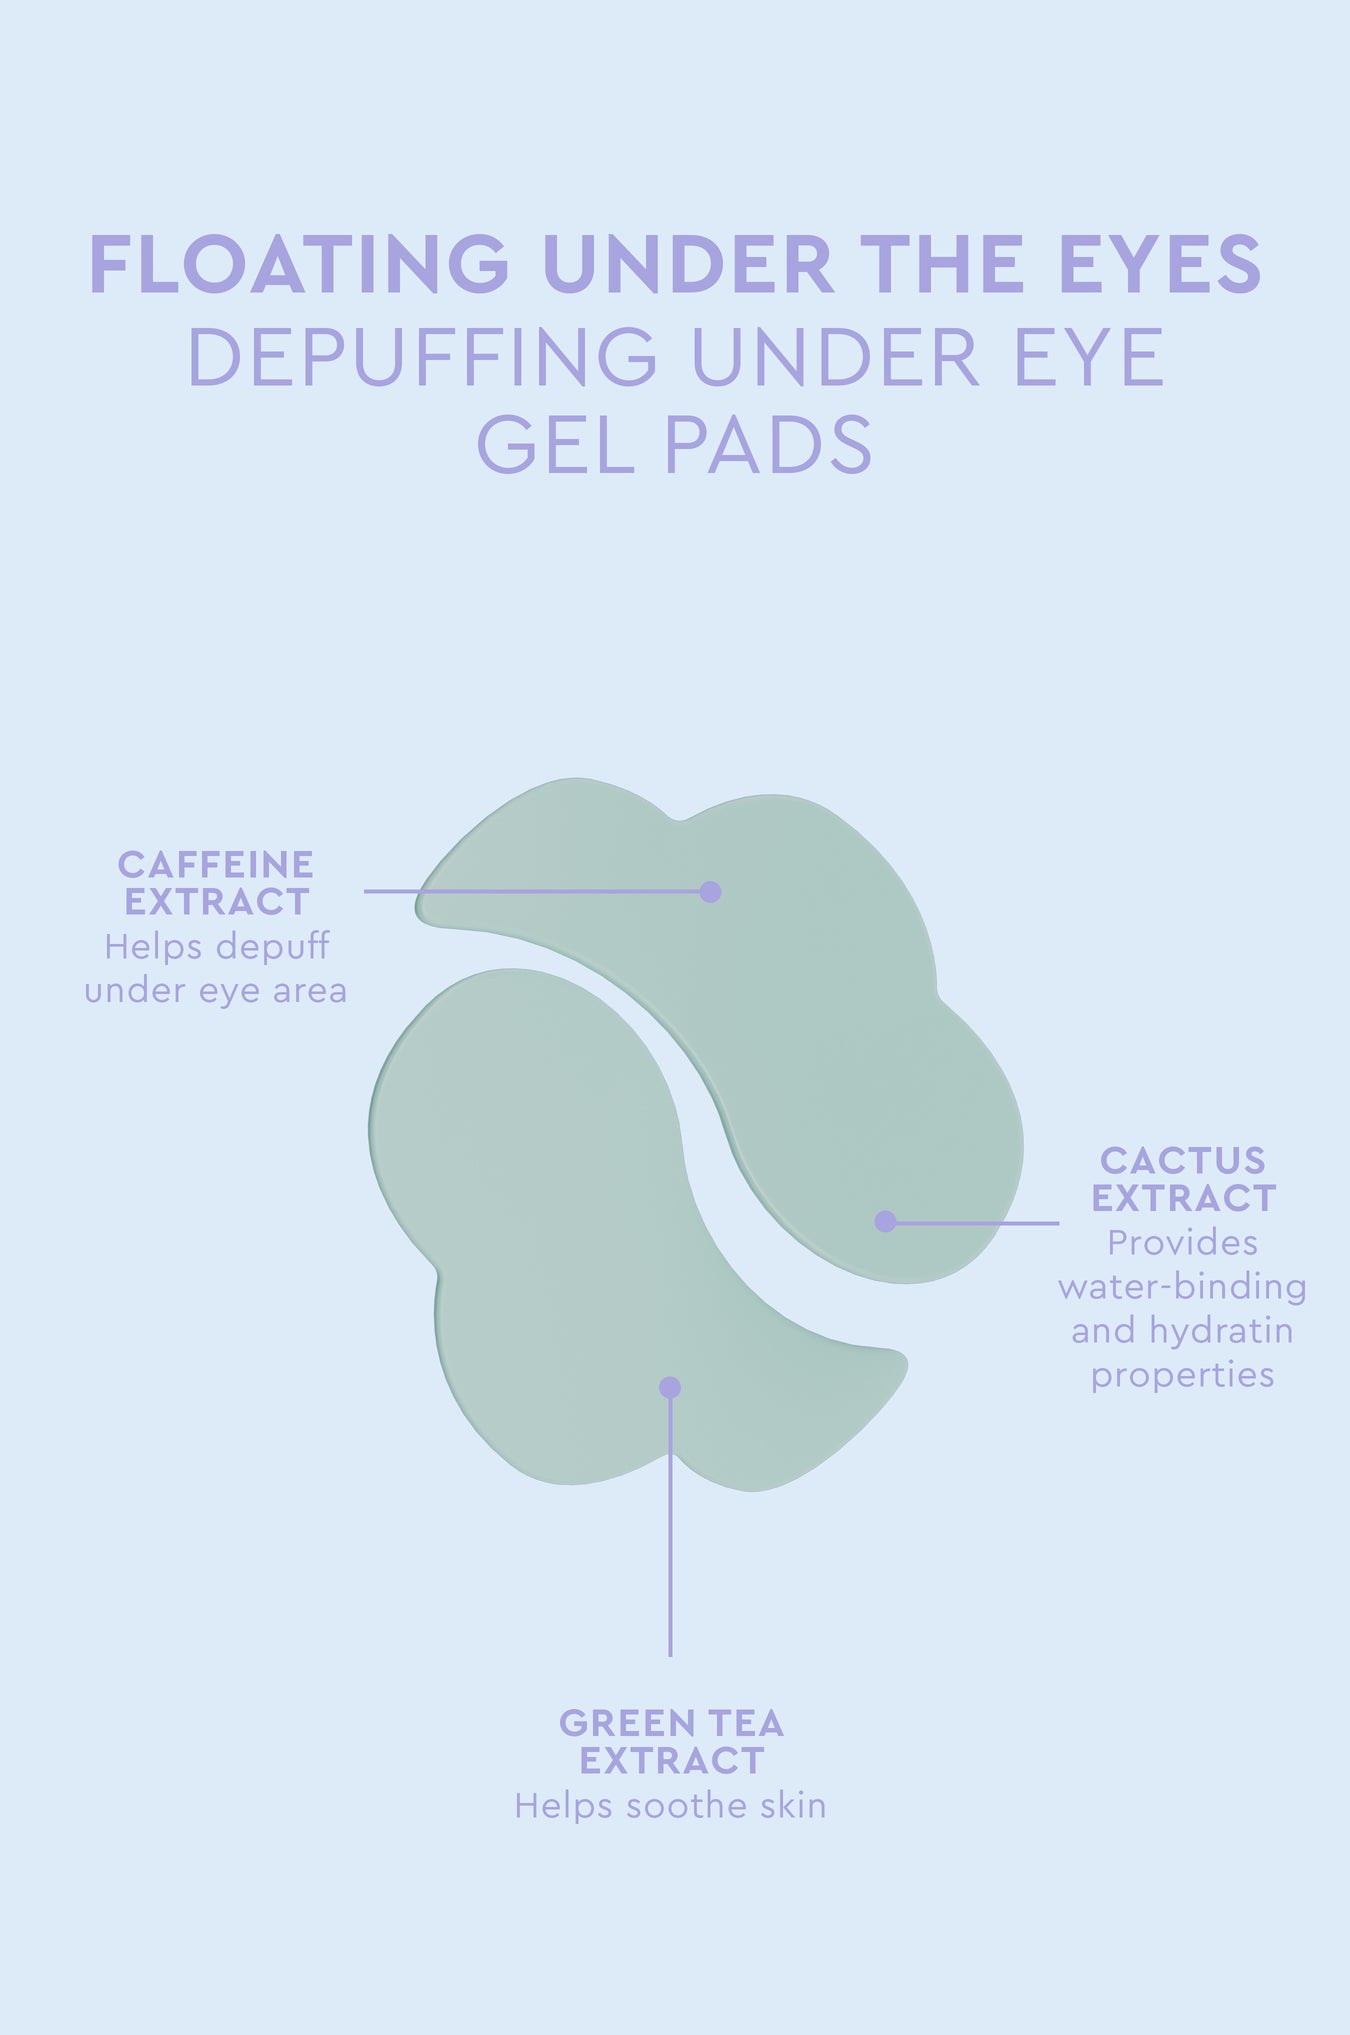 Clean & Vegan Depuffing Gel Pads - Floating Under The Eyes